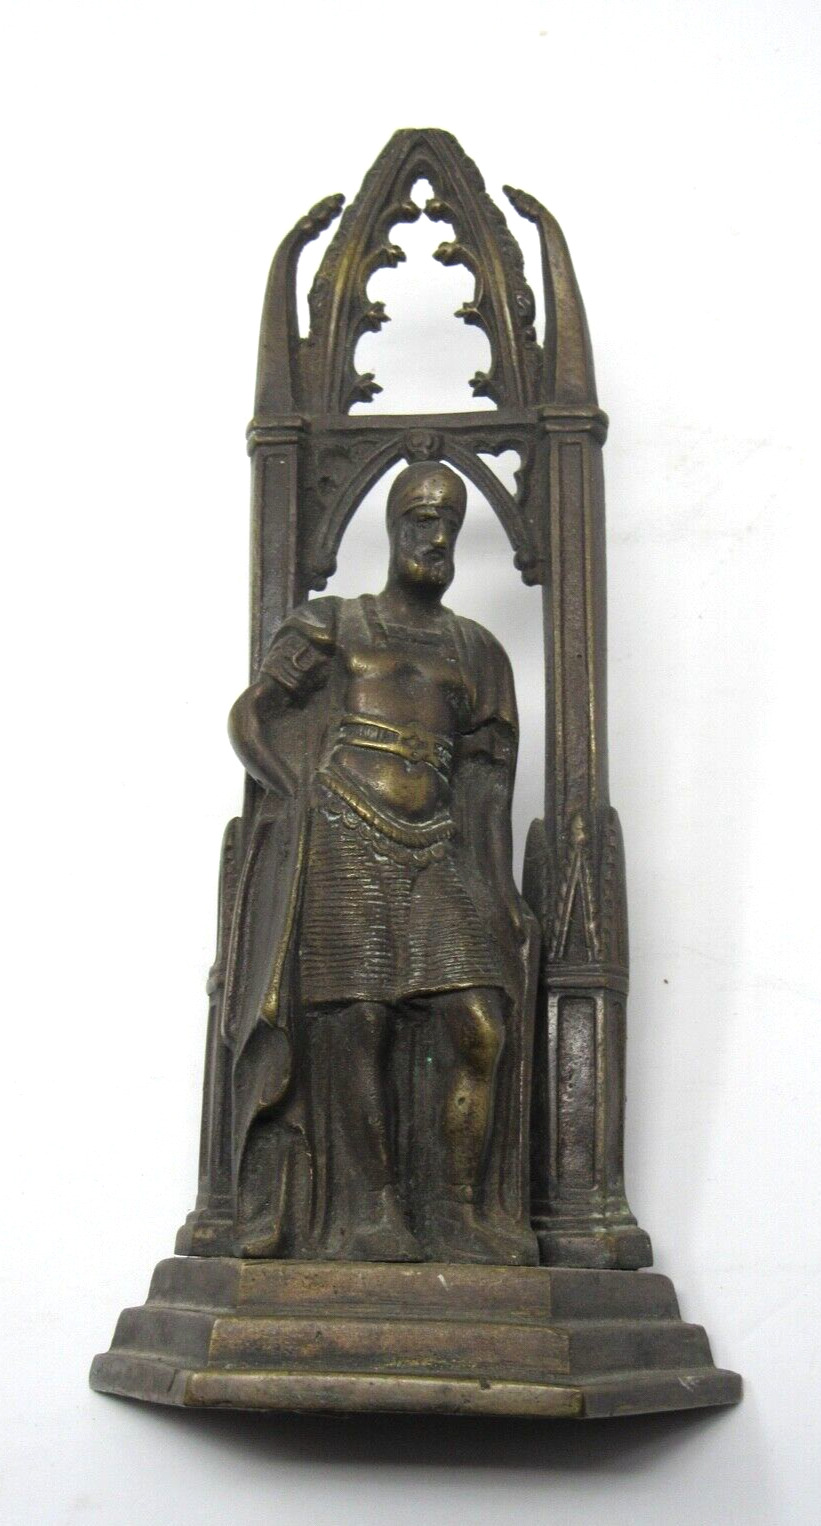 Gothic Revival Roman Soldier Antique Bronze Bookend Statute c1800s 2.9 Pounds.